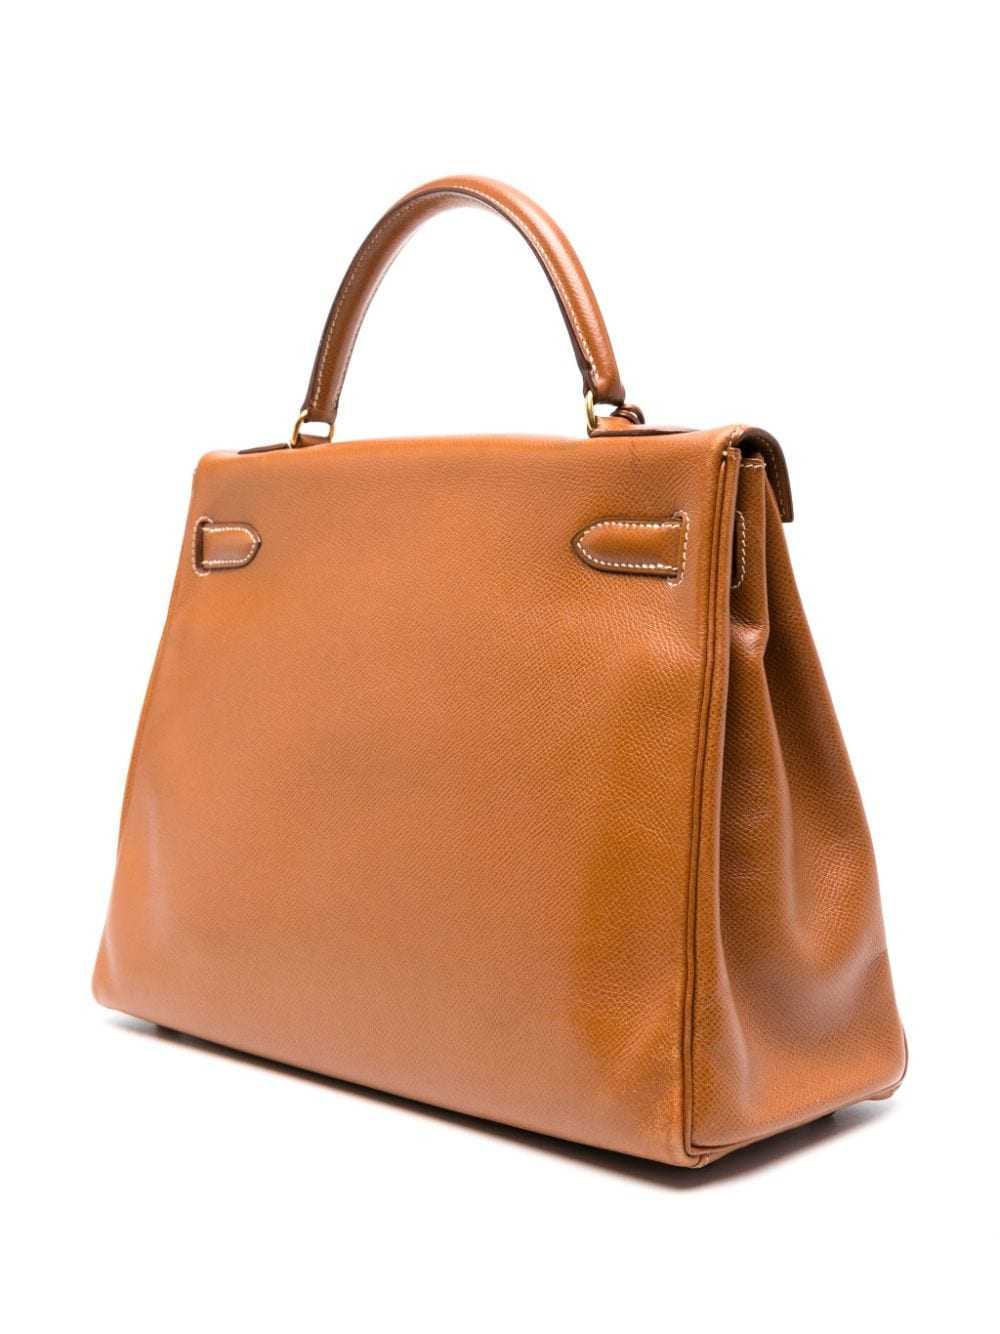 Hermès Pre-Owned 1991 Kelly handbag - Brown - image 3